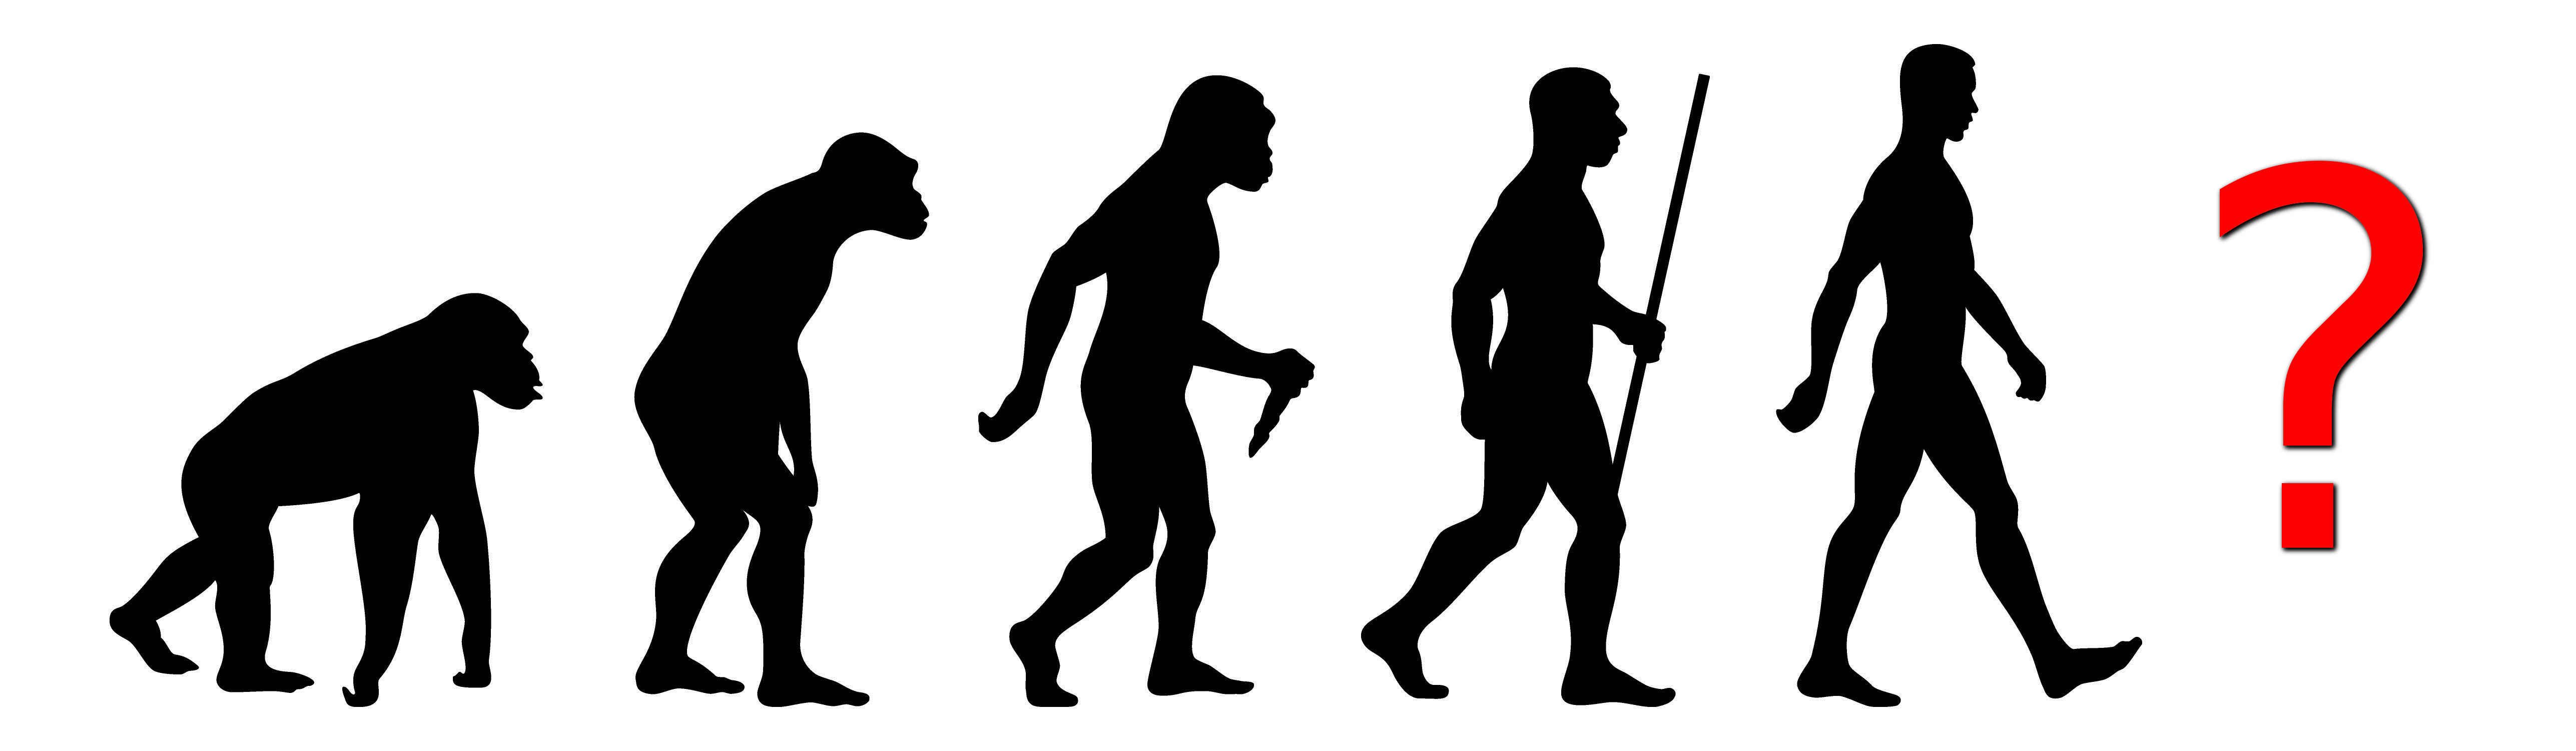 Menschen Evolution